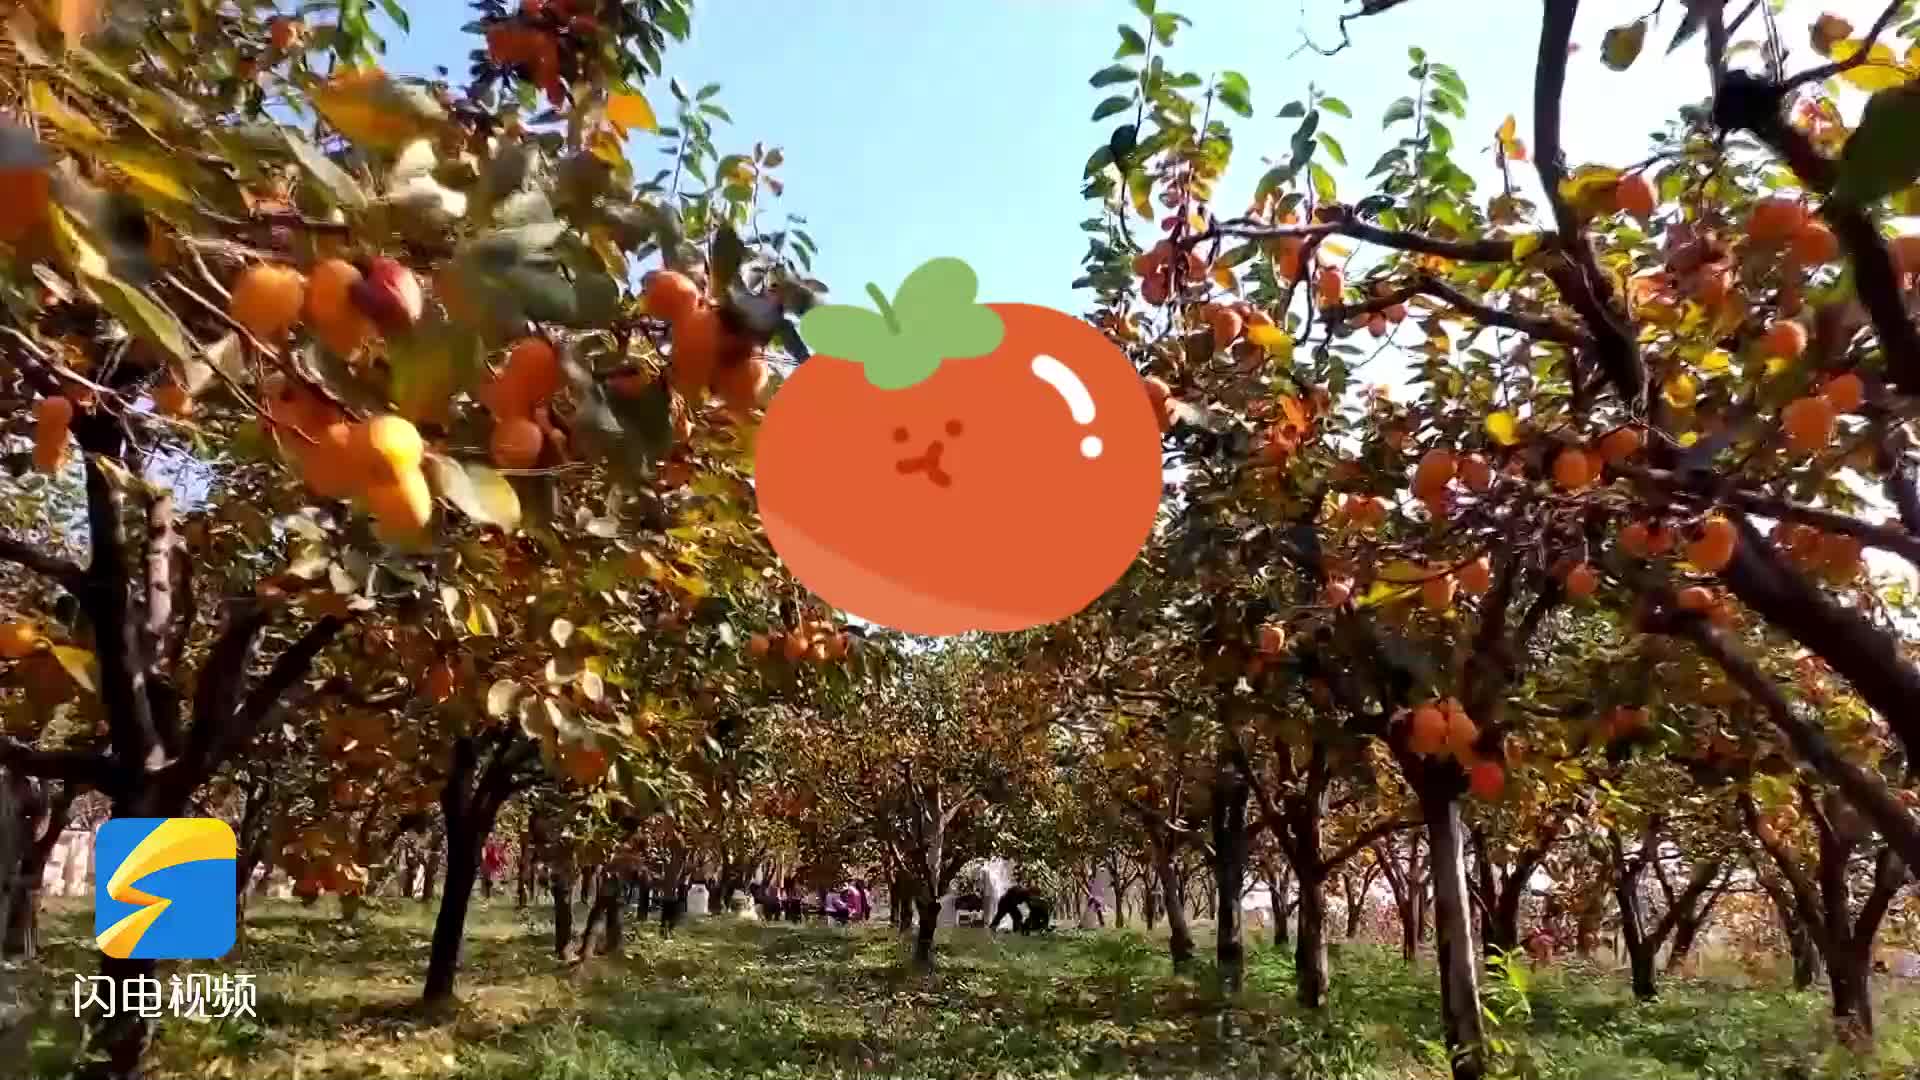 柿子挂满枝头 邹城发展订单农业助农增收